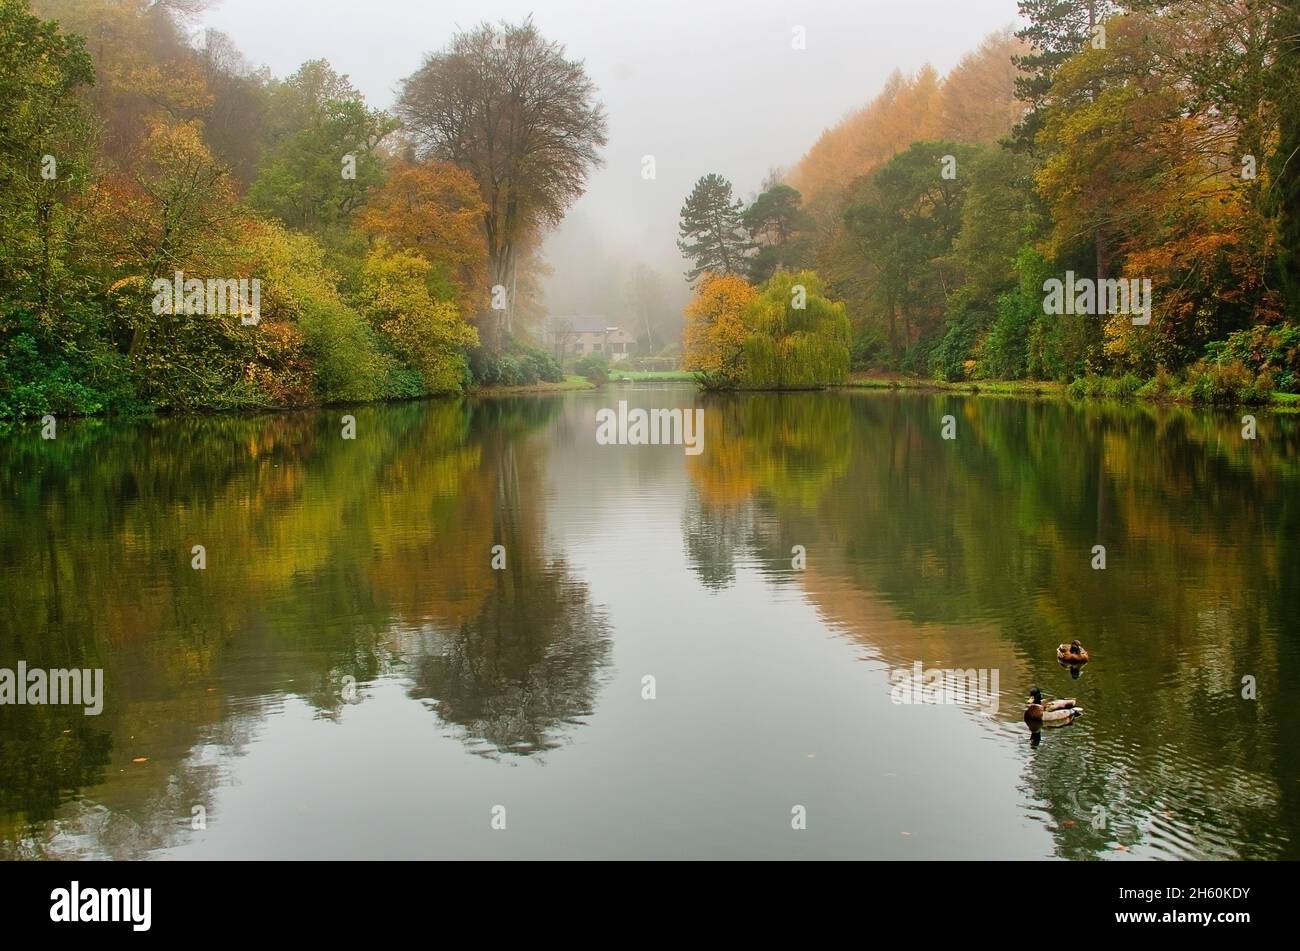 Ein Landschaftsblick auf einen Teich an einem leicht nebligen Morgen. Im Herbst aufgenommen, zeigen sie die wunderbaren Farben und die Spiegelung im Wasser Stockfoto